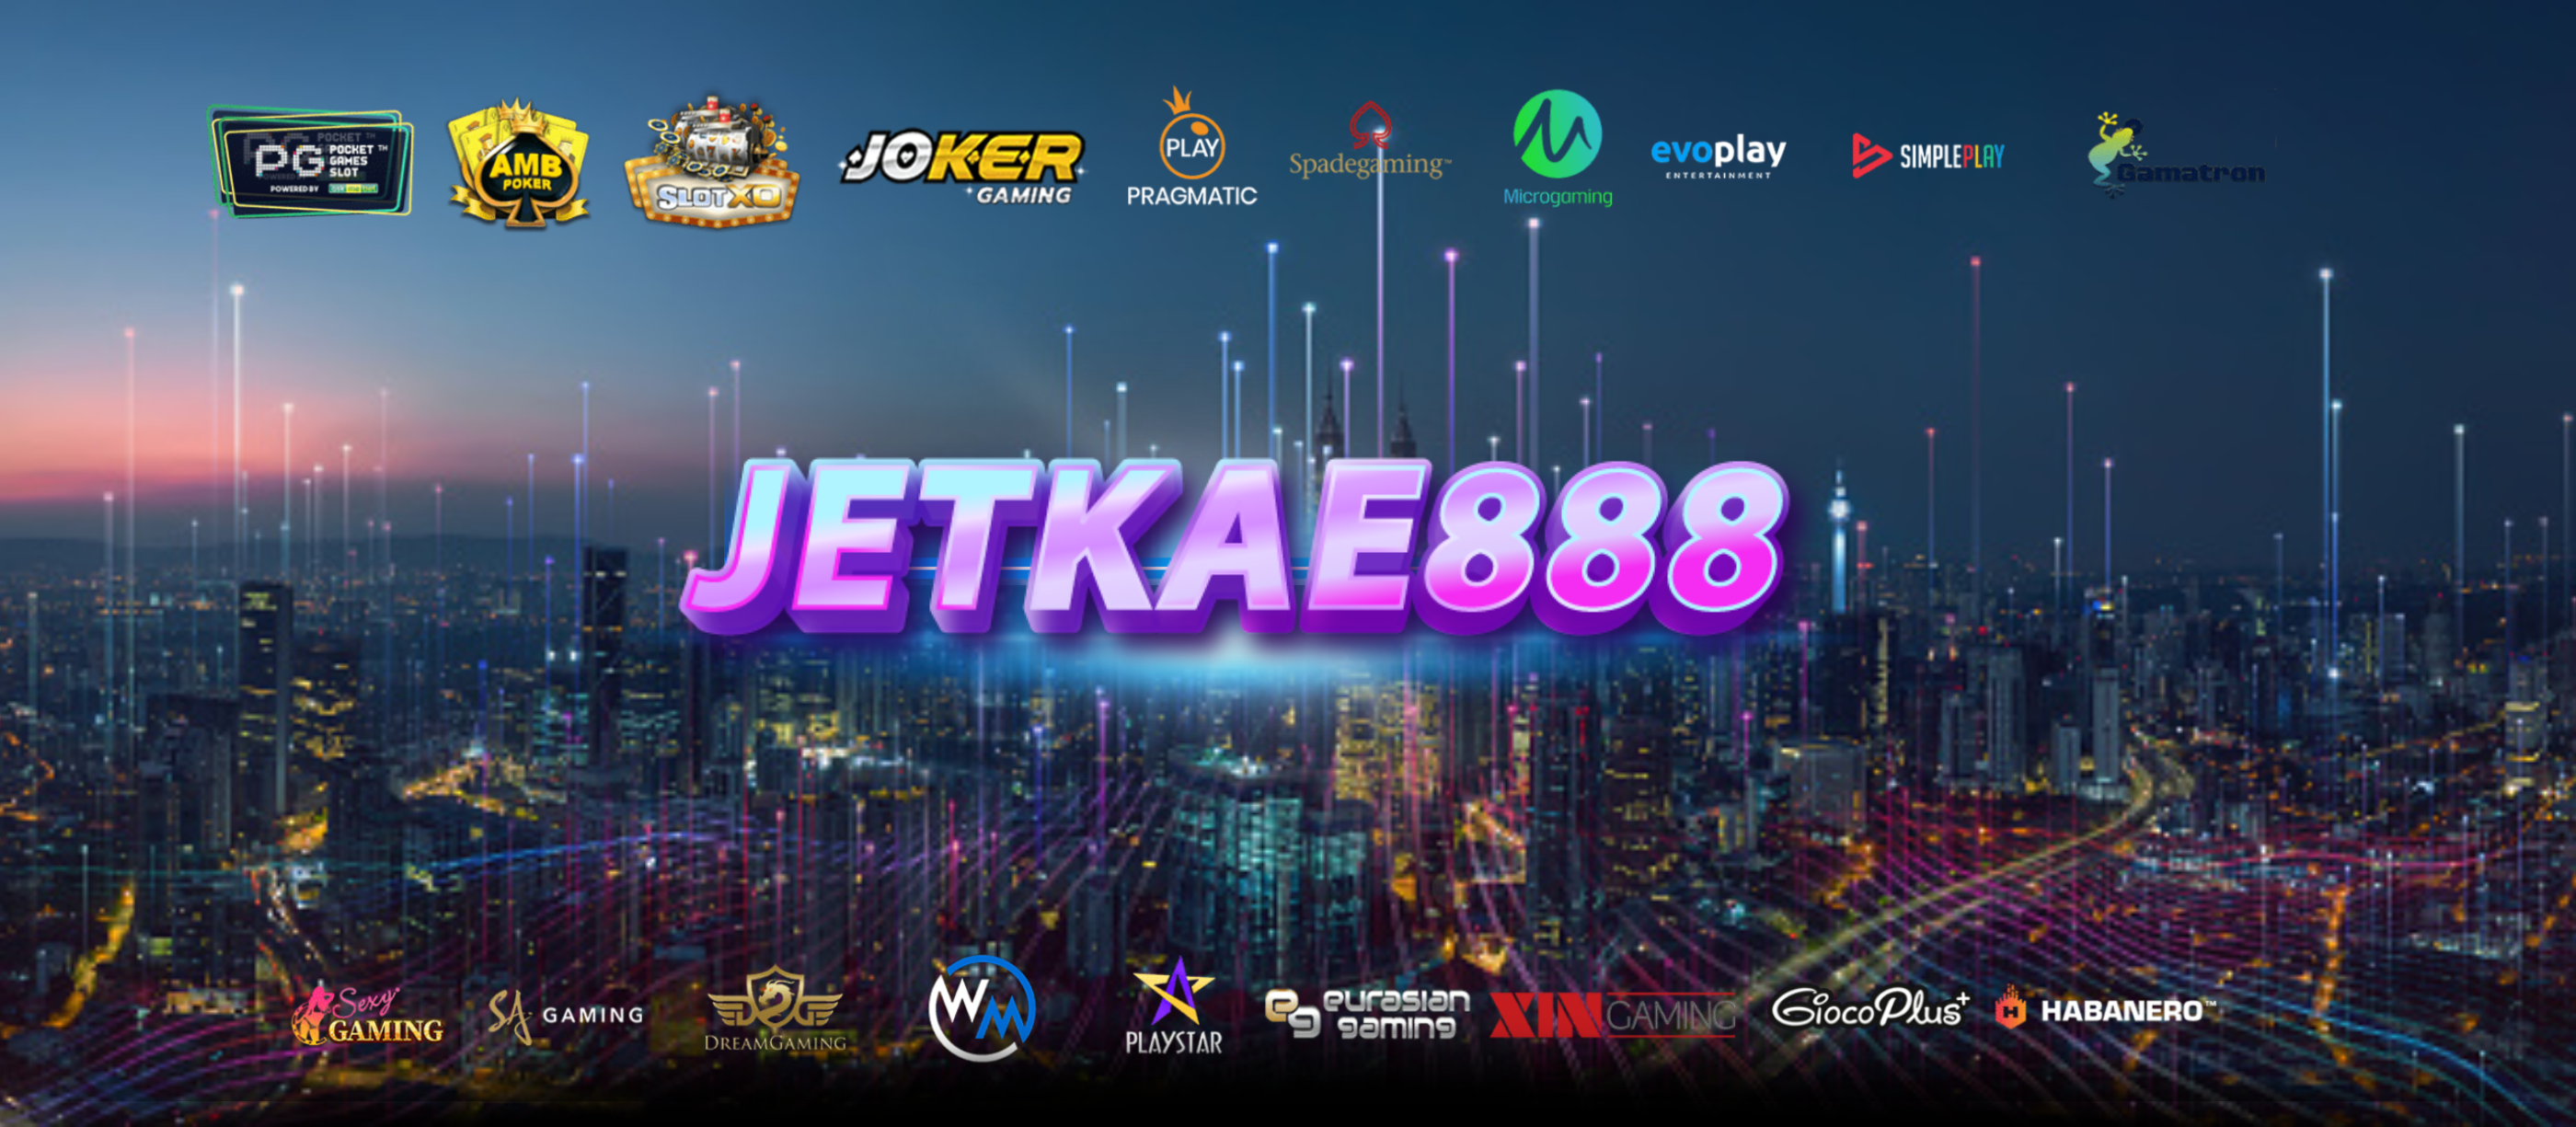 หากคุณชอบเล่นเกมสล็อต ที่ jetkae888 เรา คือ เพื่อนกัน